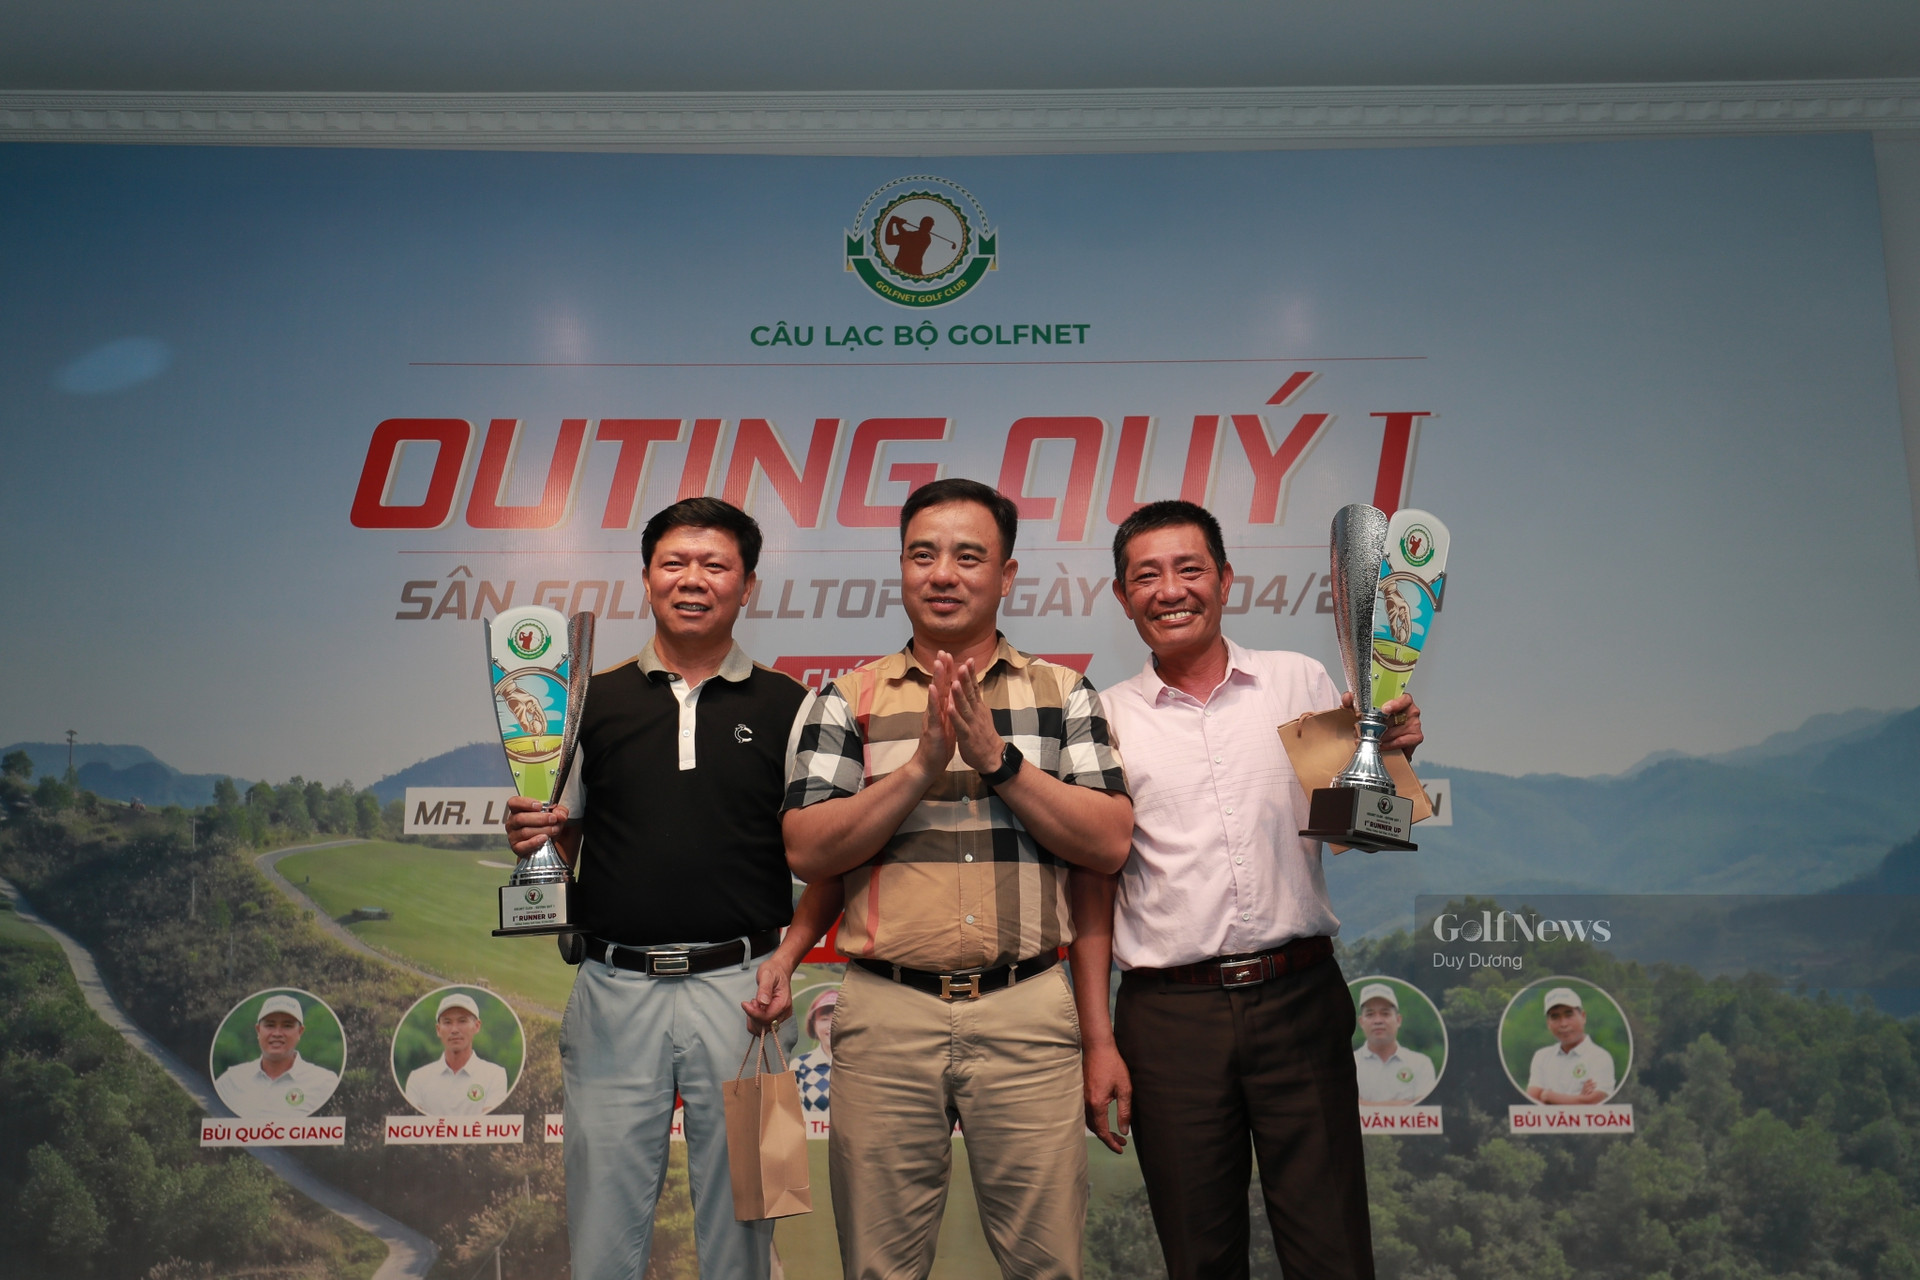 CLB GolfNet tổ chức giải đấu Outing Quý 1 gặp mặt đầu năm - Ảnh 3.